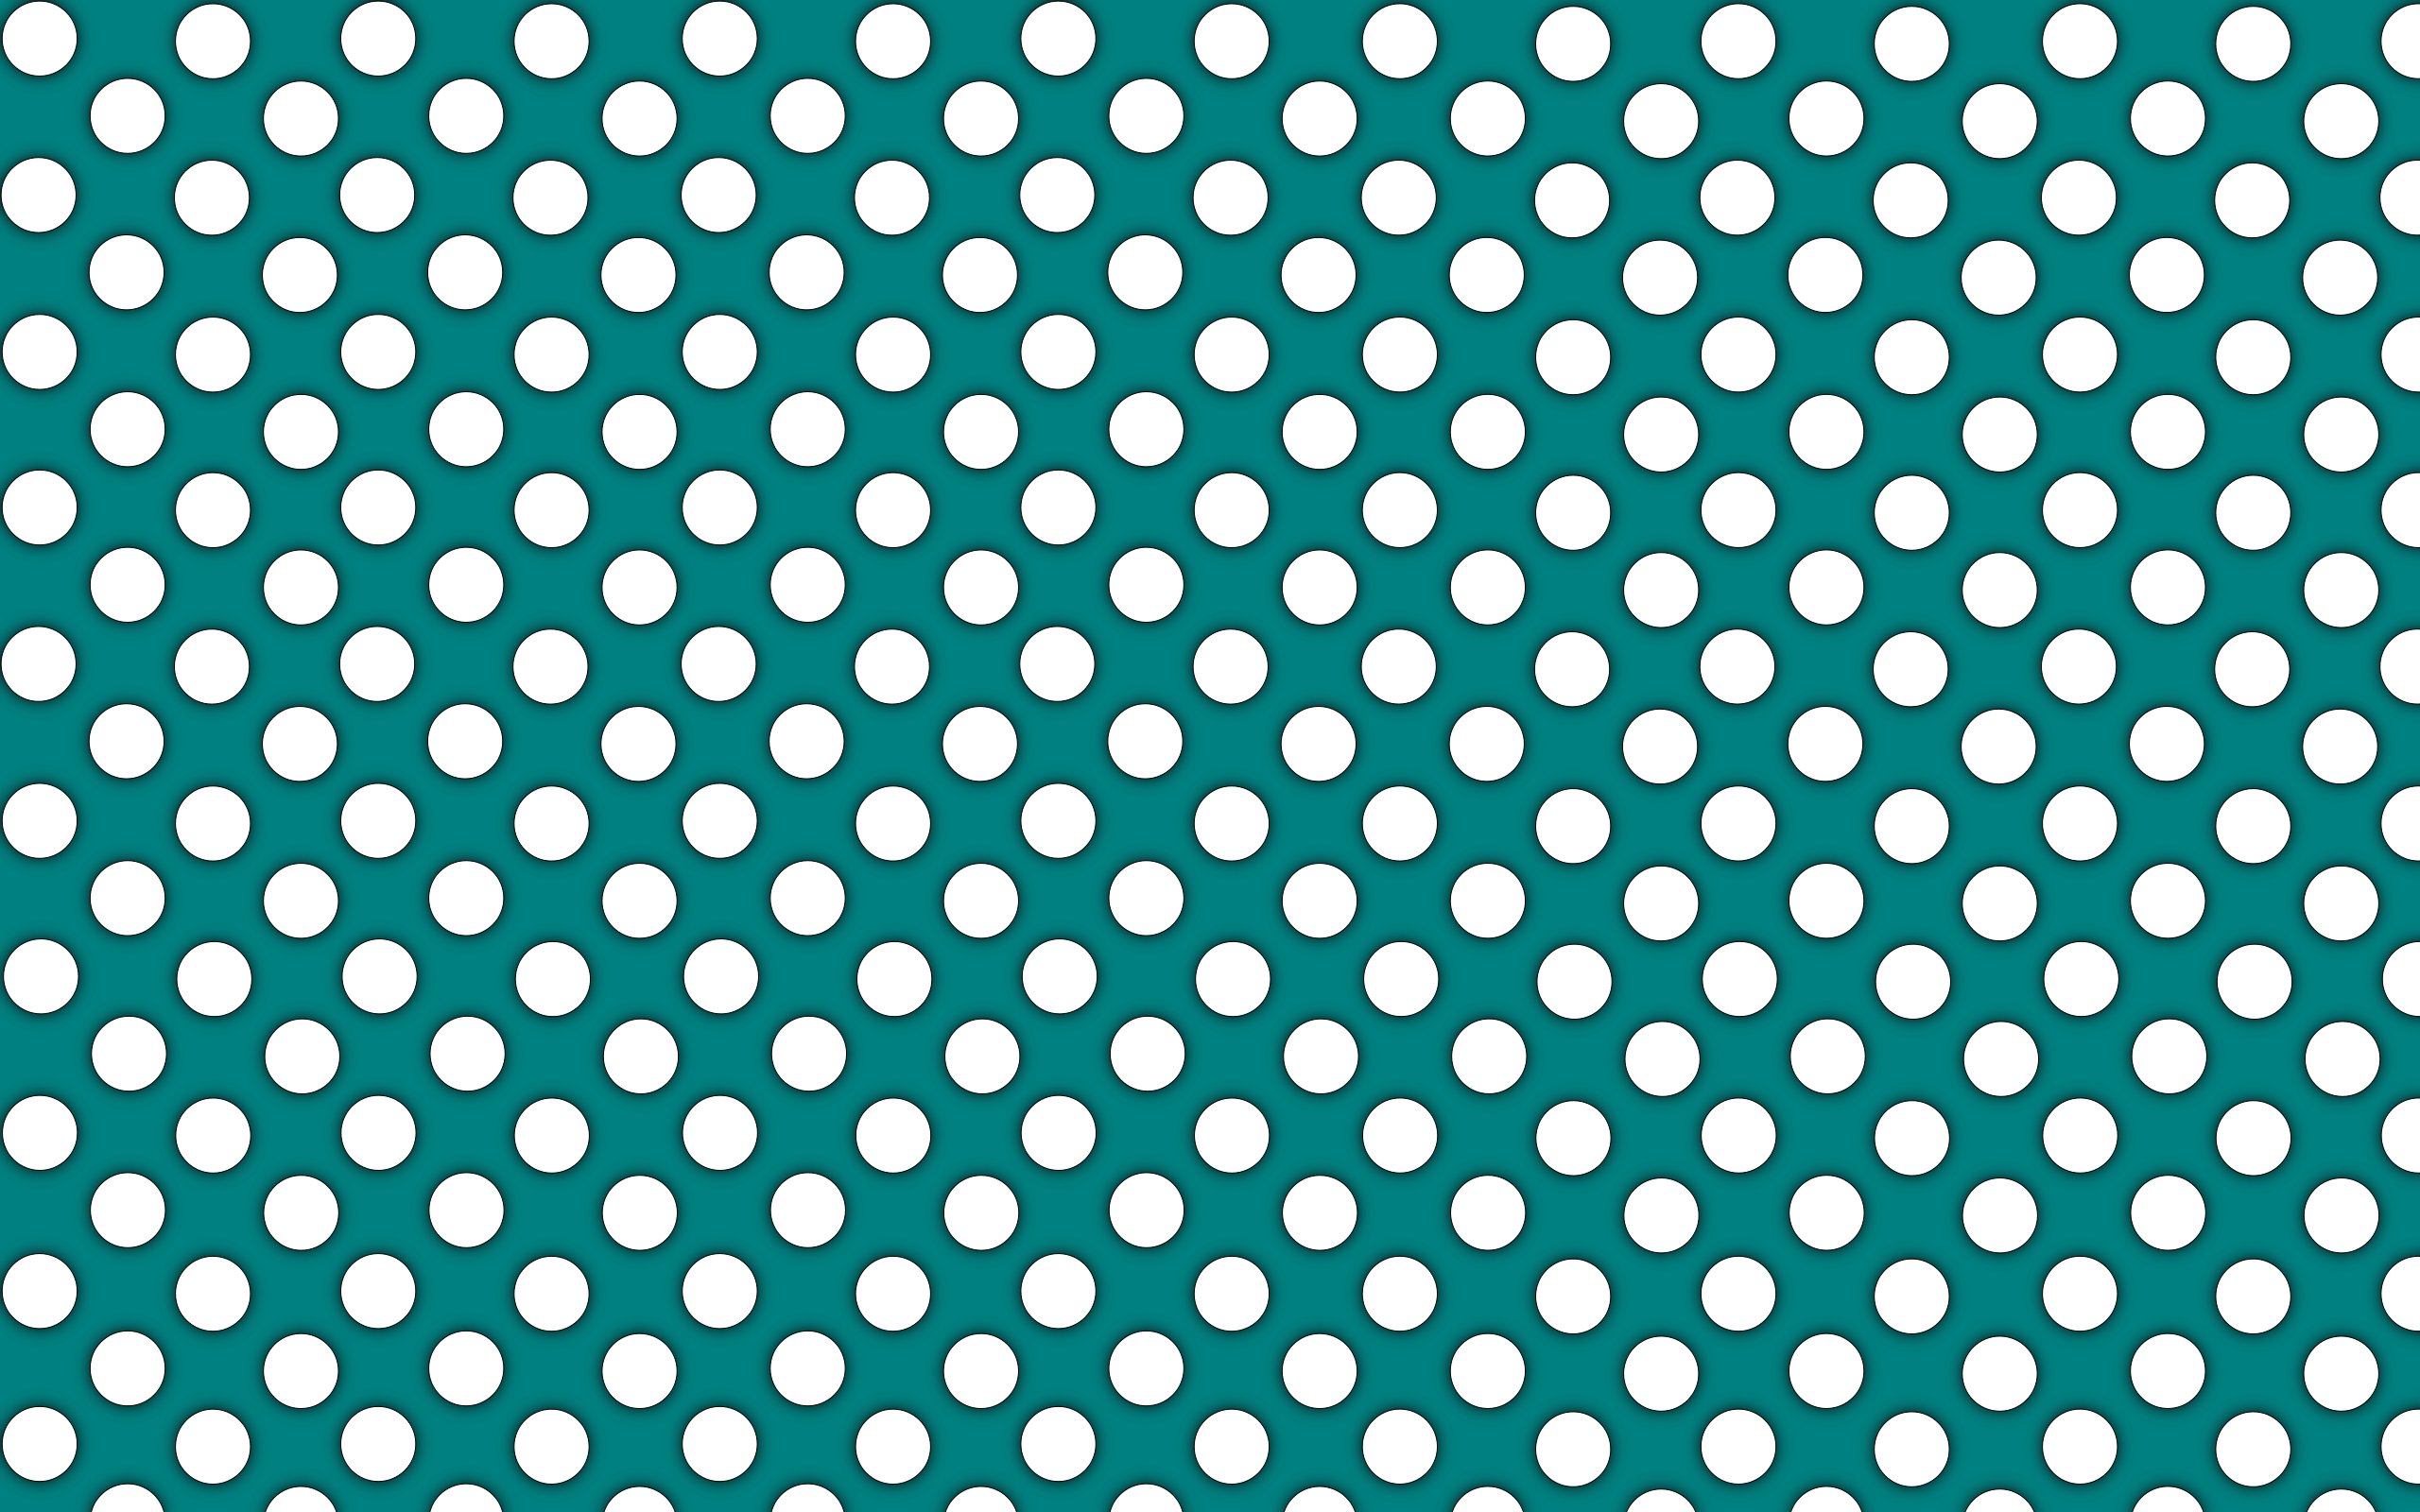 Black Polka Dot Wallpaper - WallpaperSafari